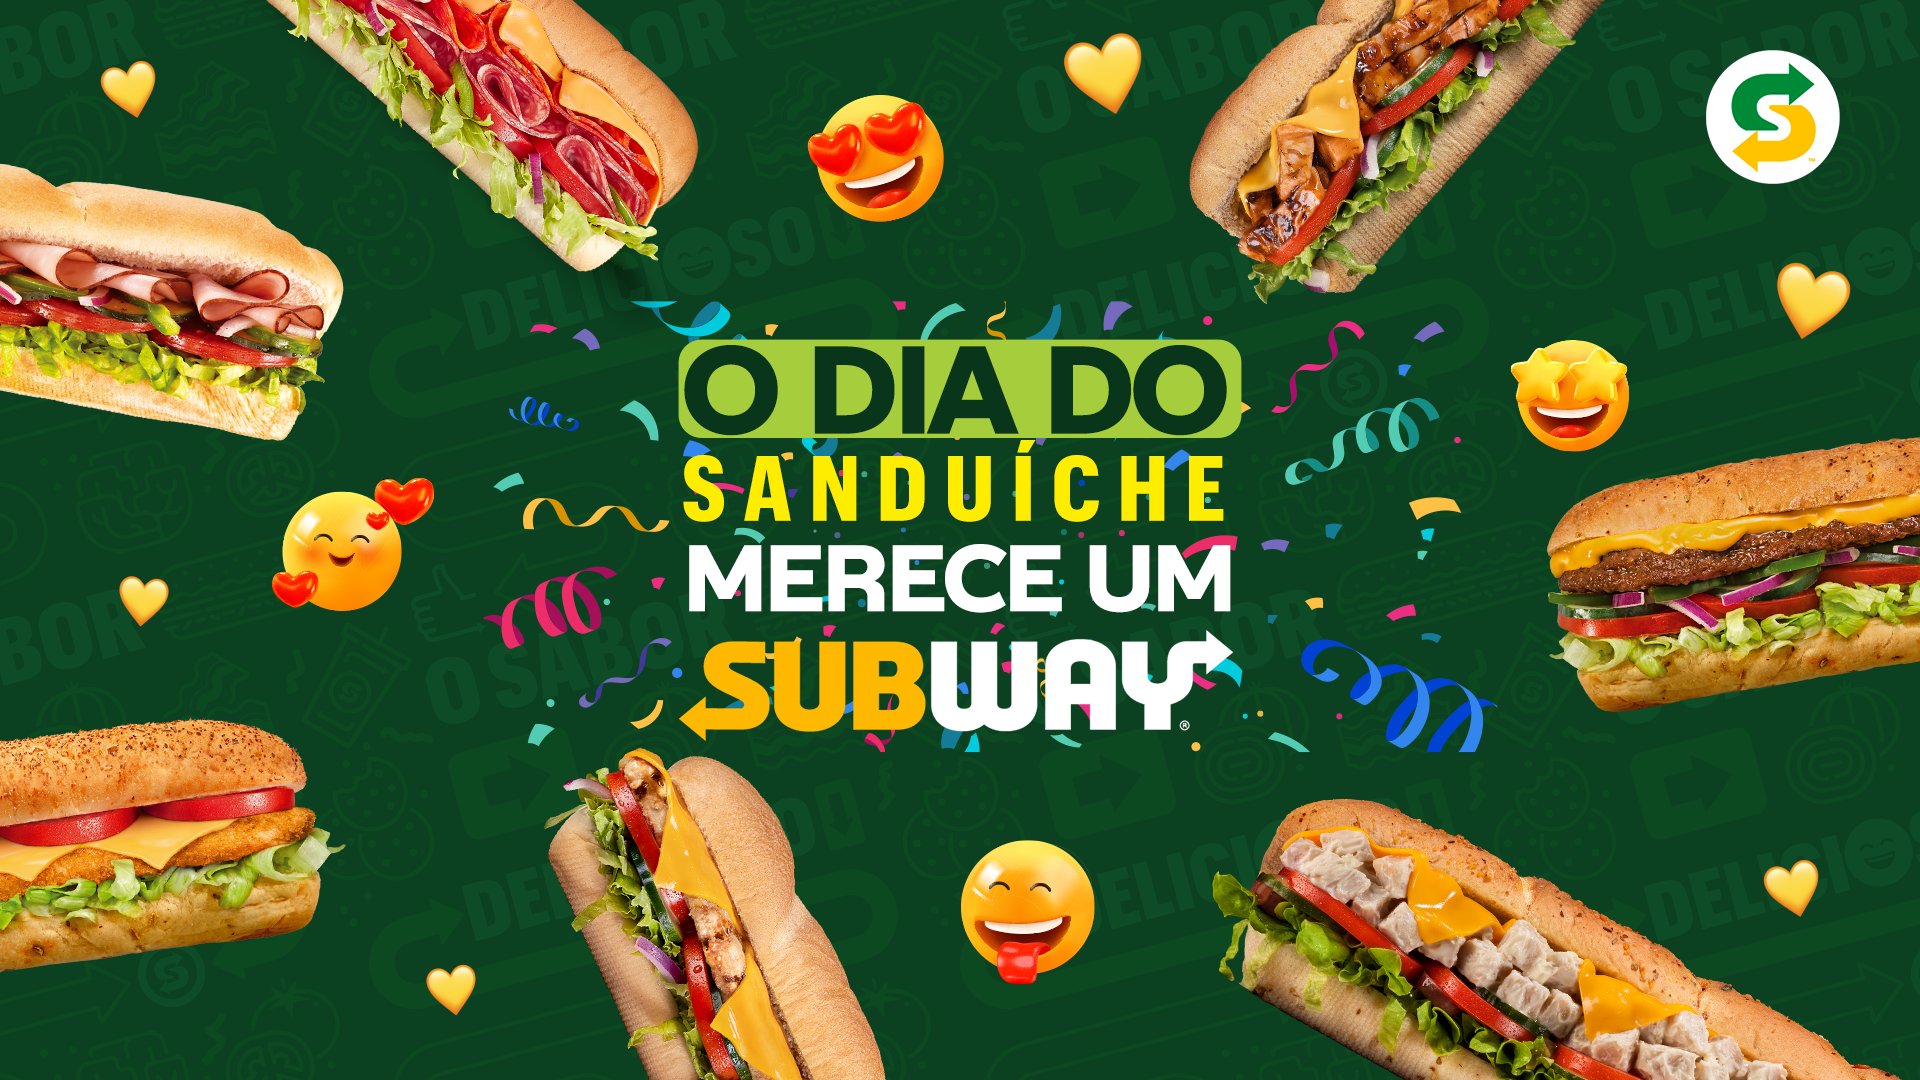 Subway Brasil - Tudo que é perfeito a gente pega com as